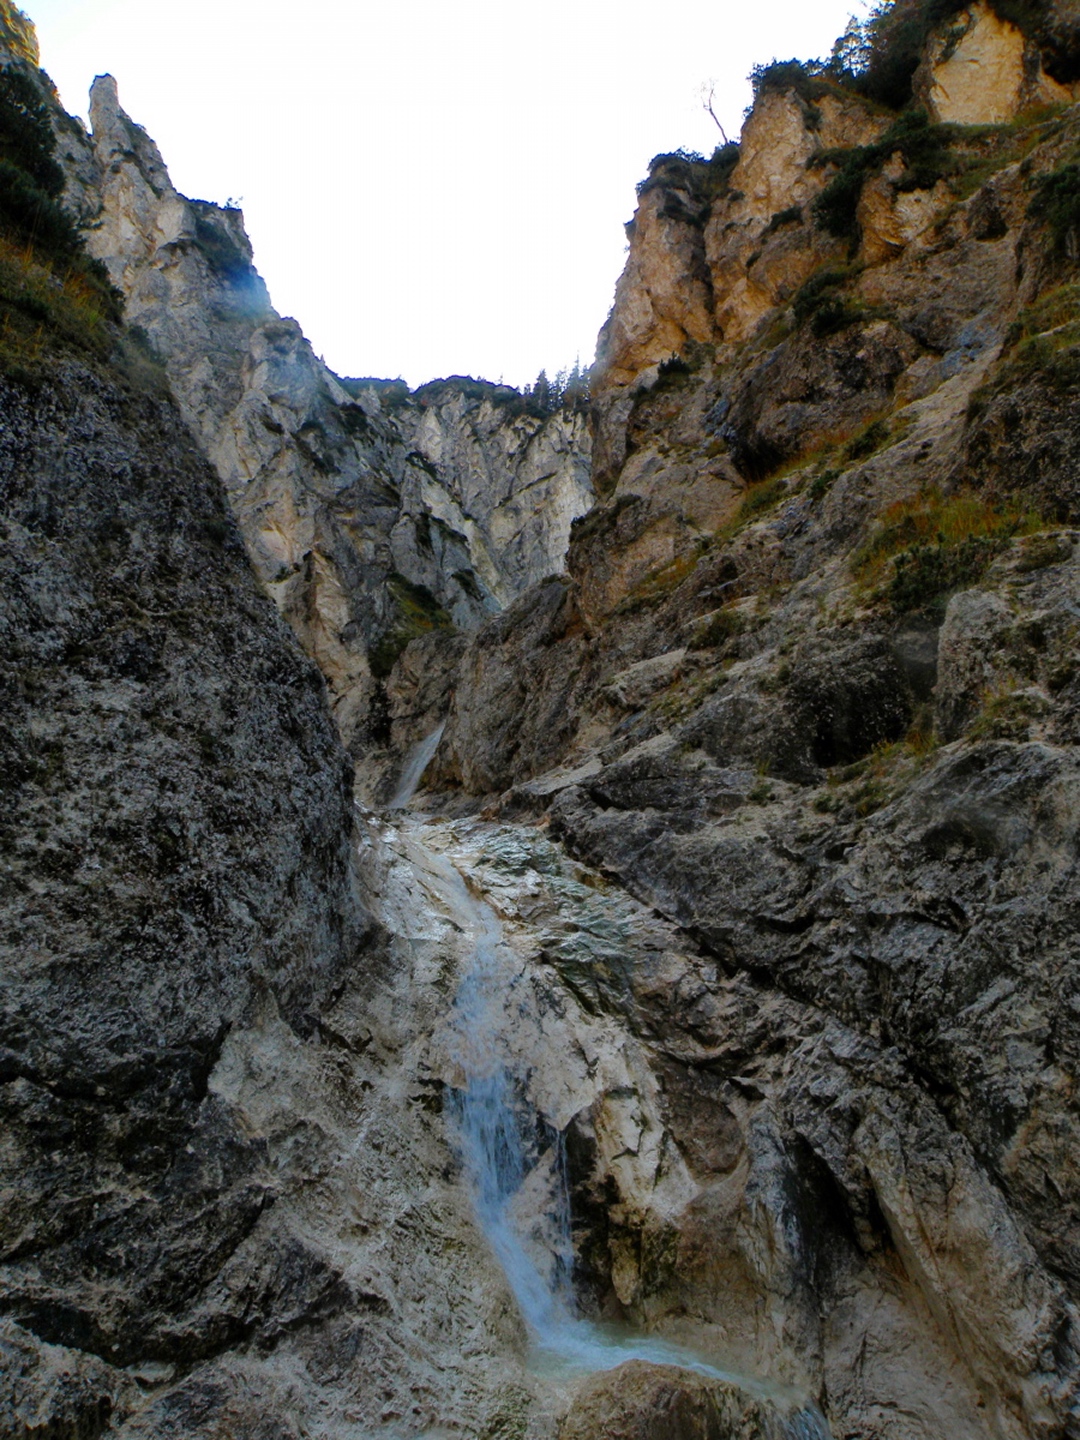 Ein Wasserfall versperrt den Weiterweg. Mit Kletterei ginge es schon weiter, aber nicht ohne nasse Füße